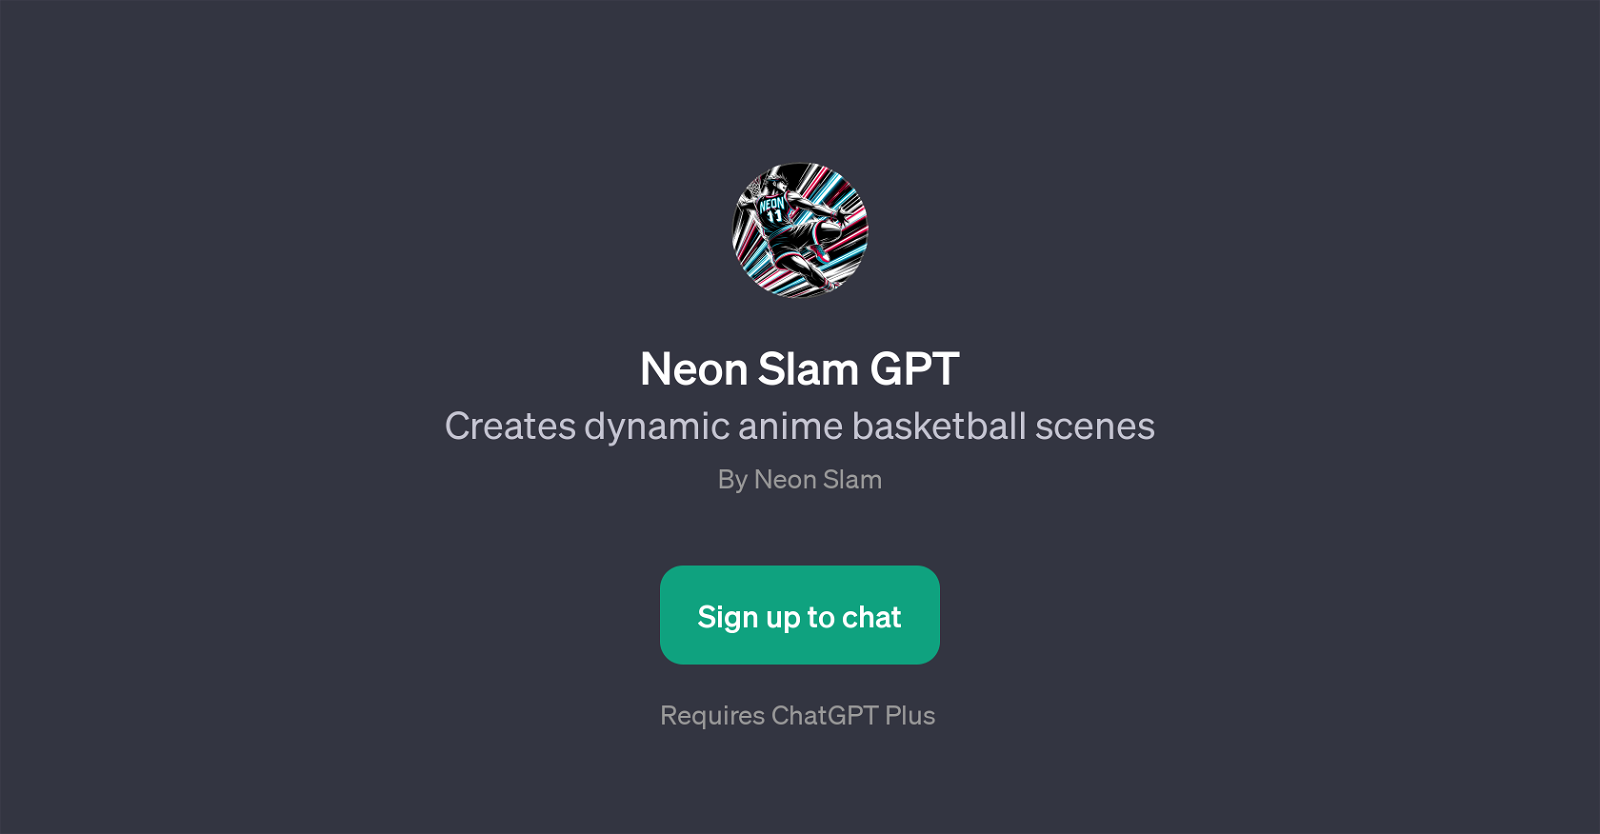 Neon Slam GPT website